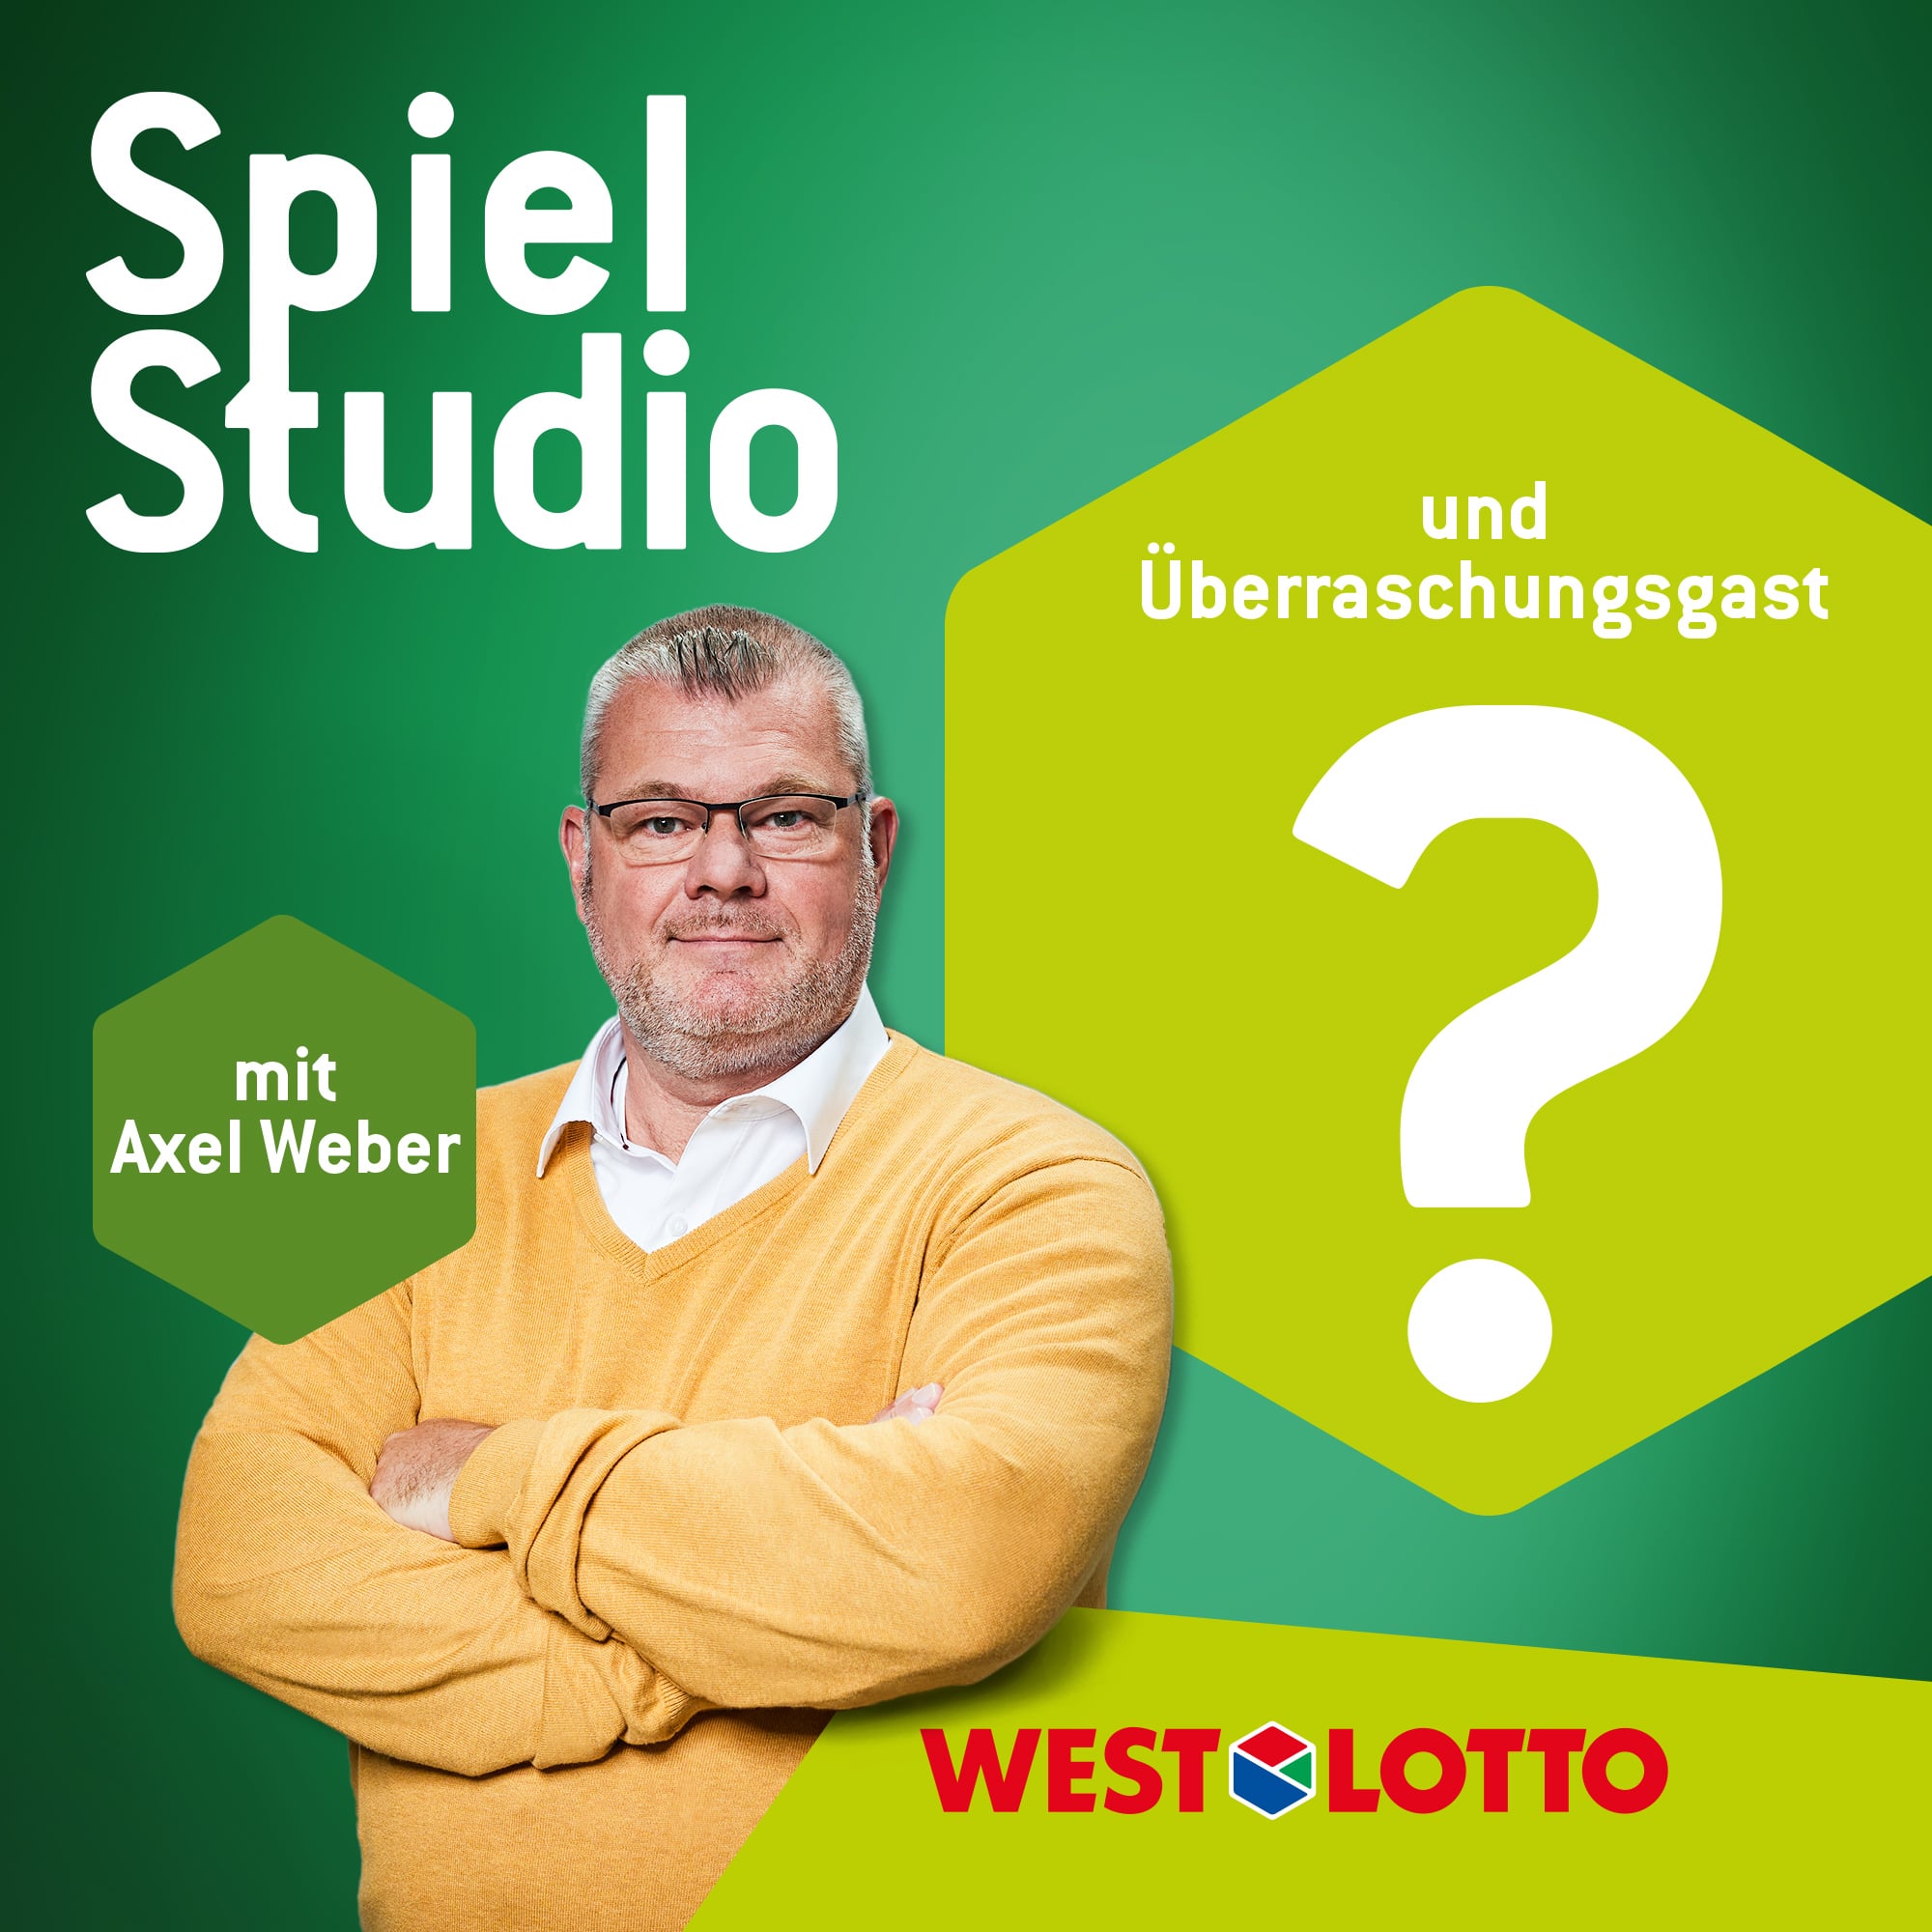 Axel Weber SpielStudio